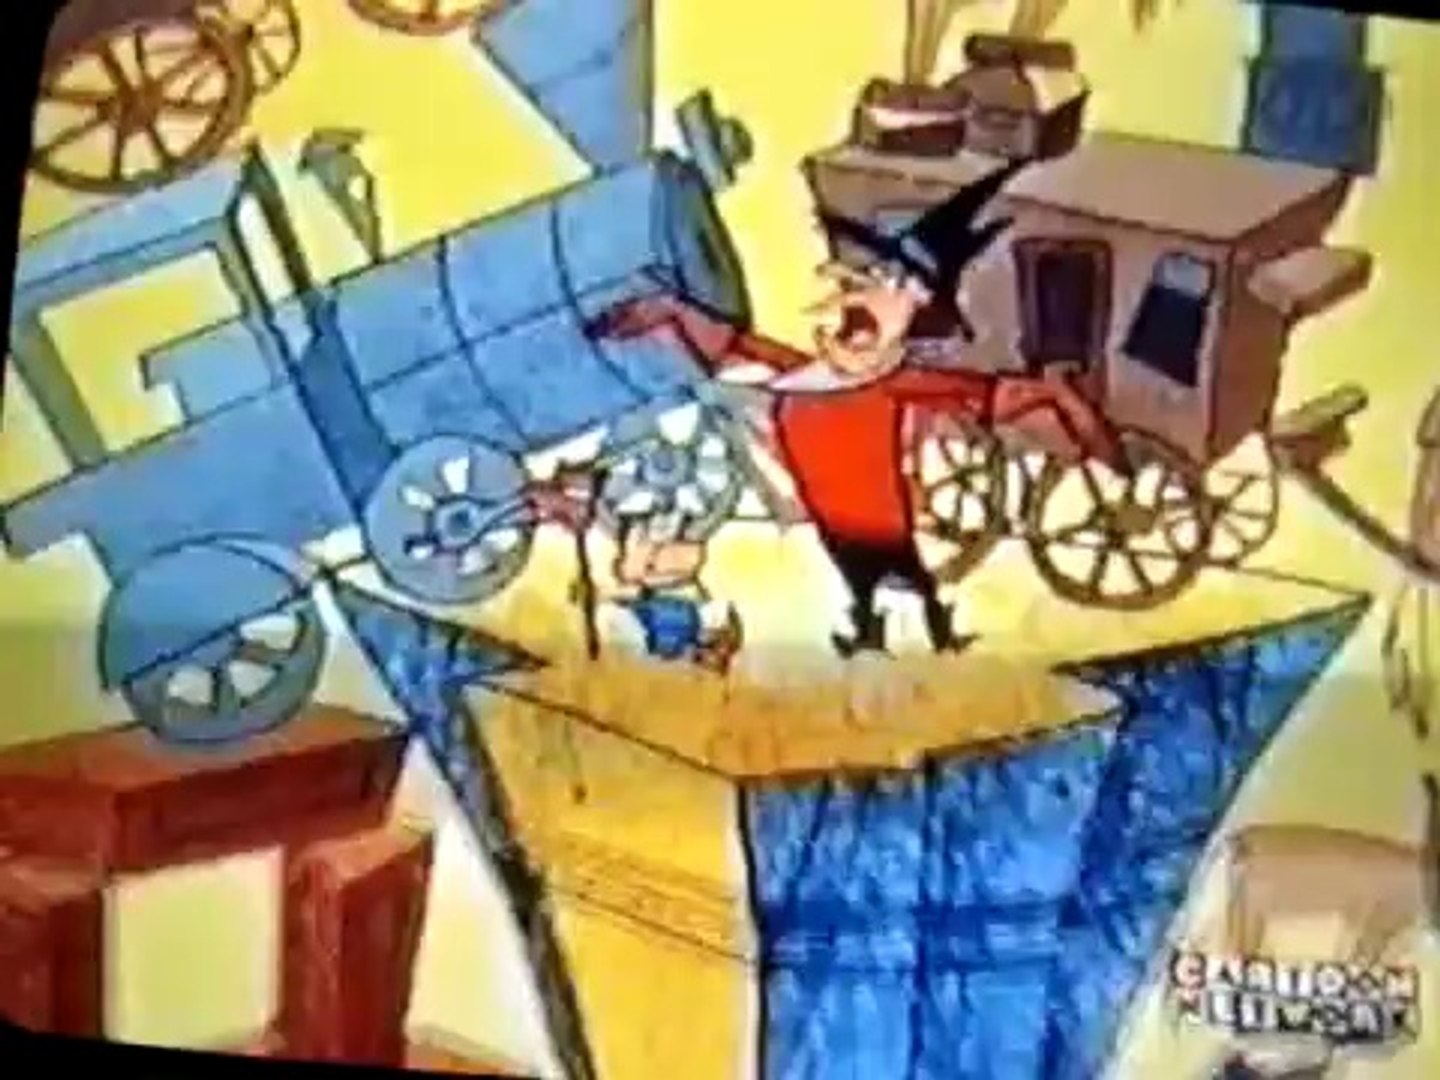 Desenhos incríveis - o show! (dublado) - Cartoon Network anos 90 - cartoon cartoons